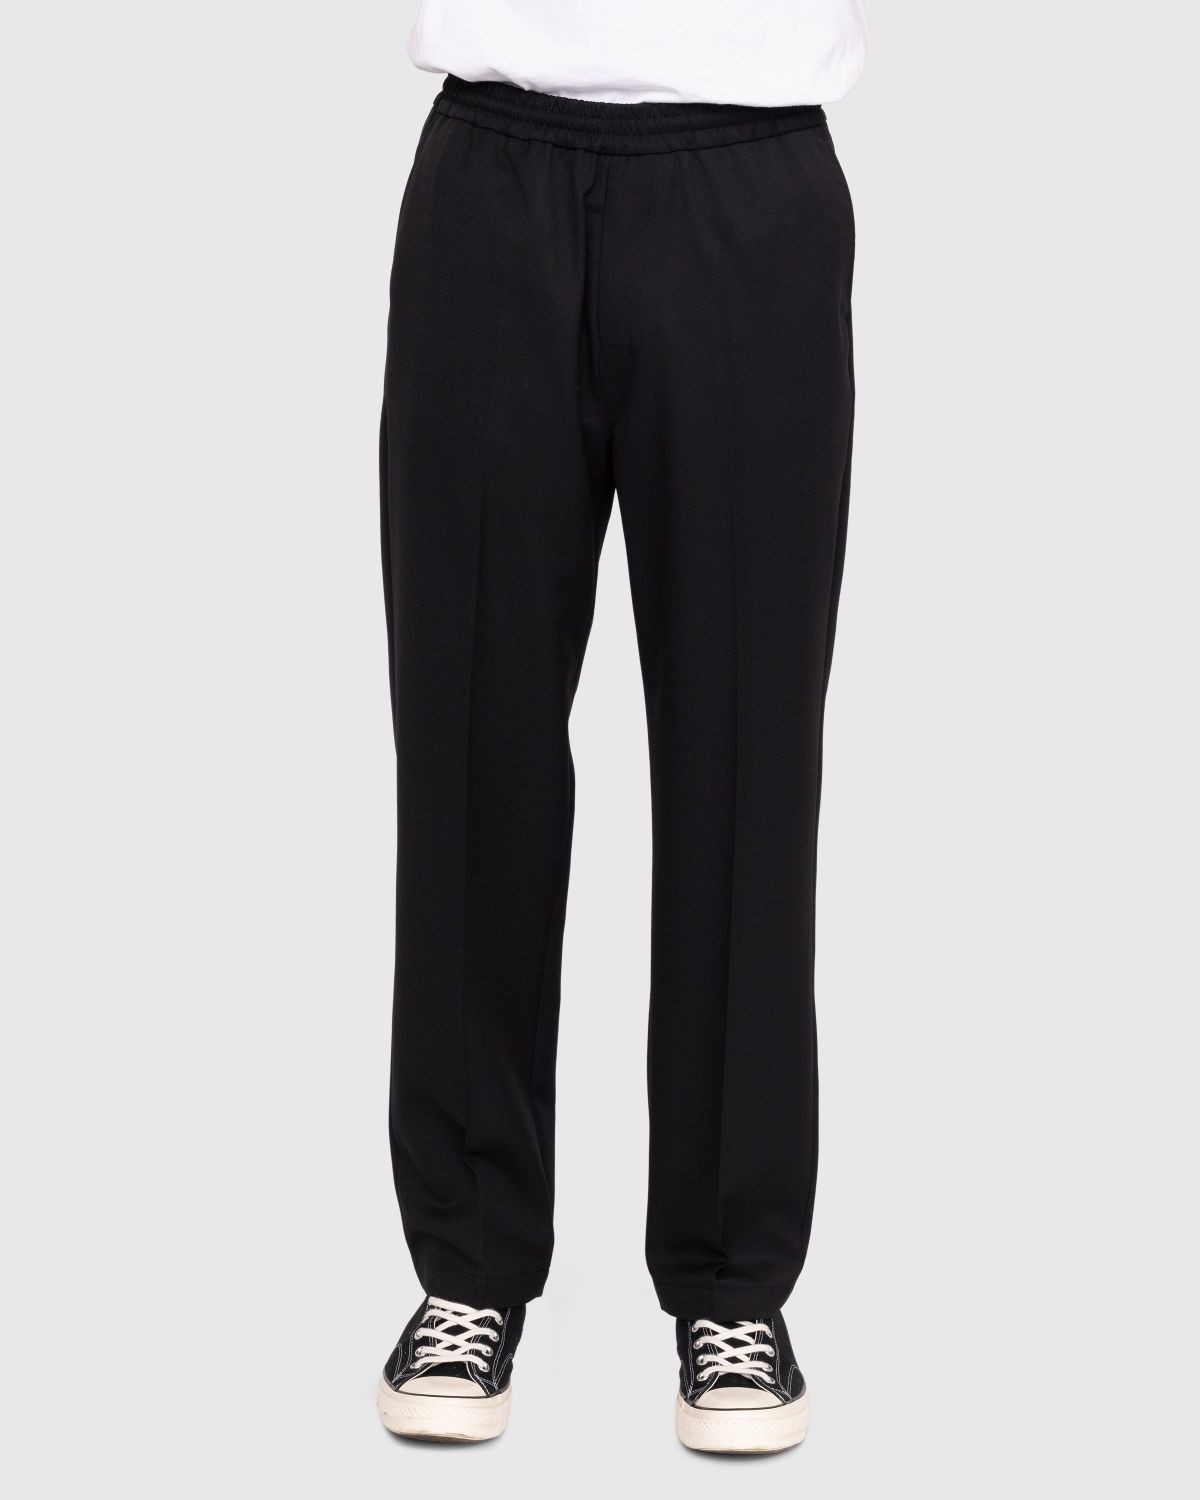 Highsnobiety – Wool Blend Elastic Pants Black - Trousers - Black - Image 2